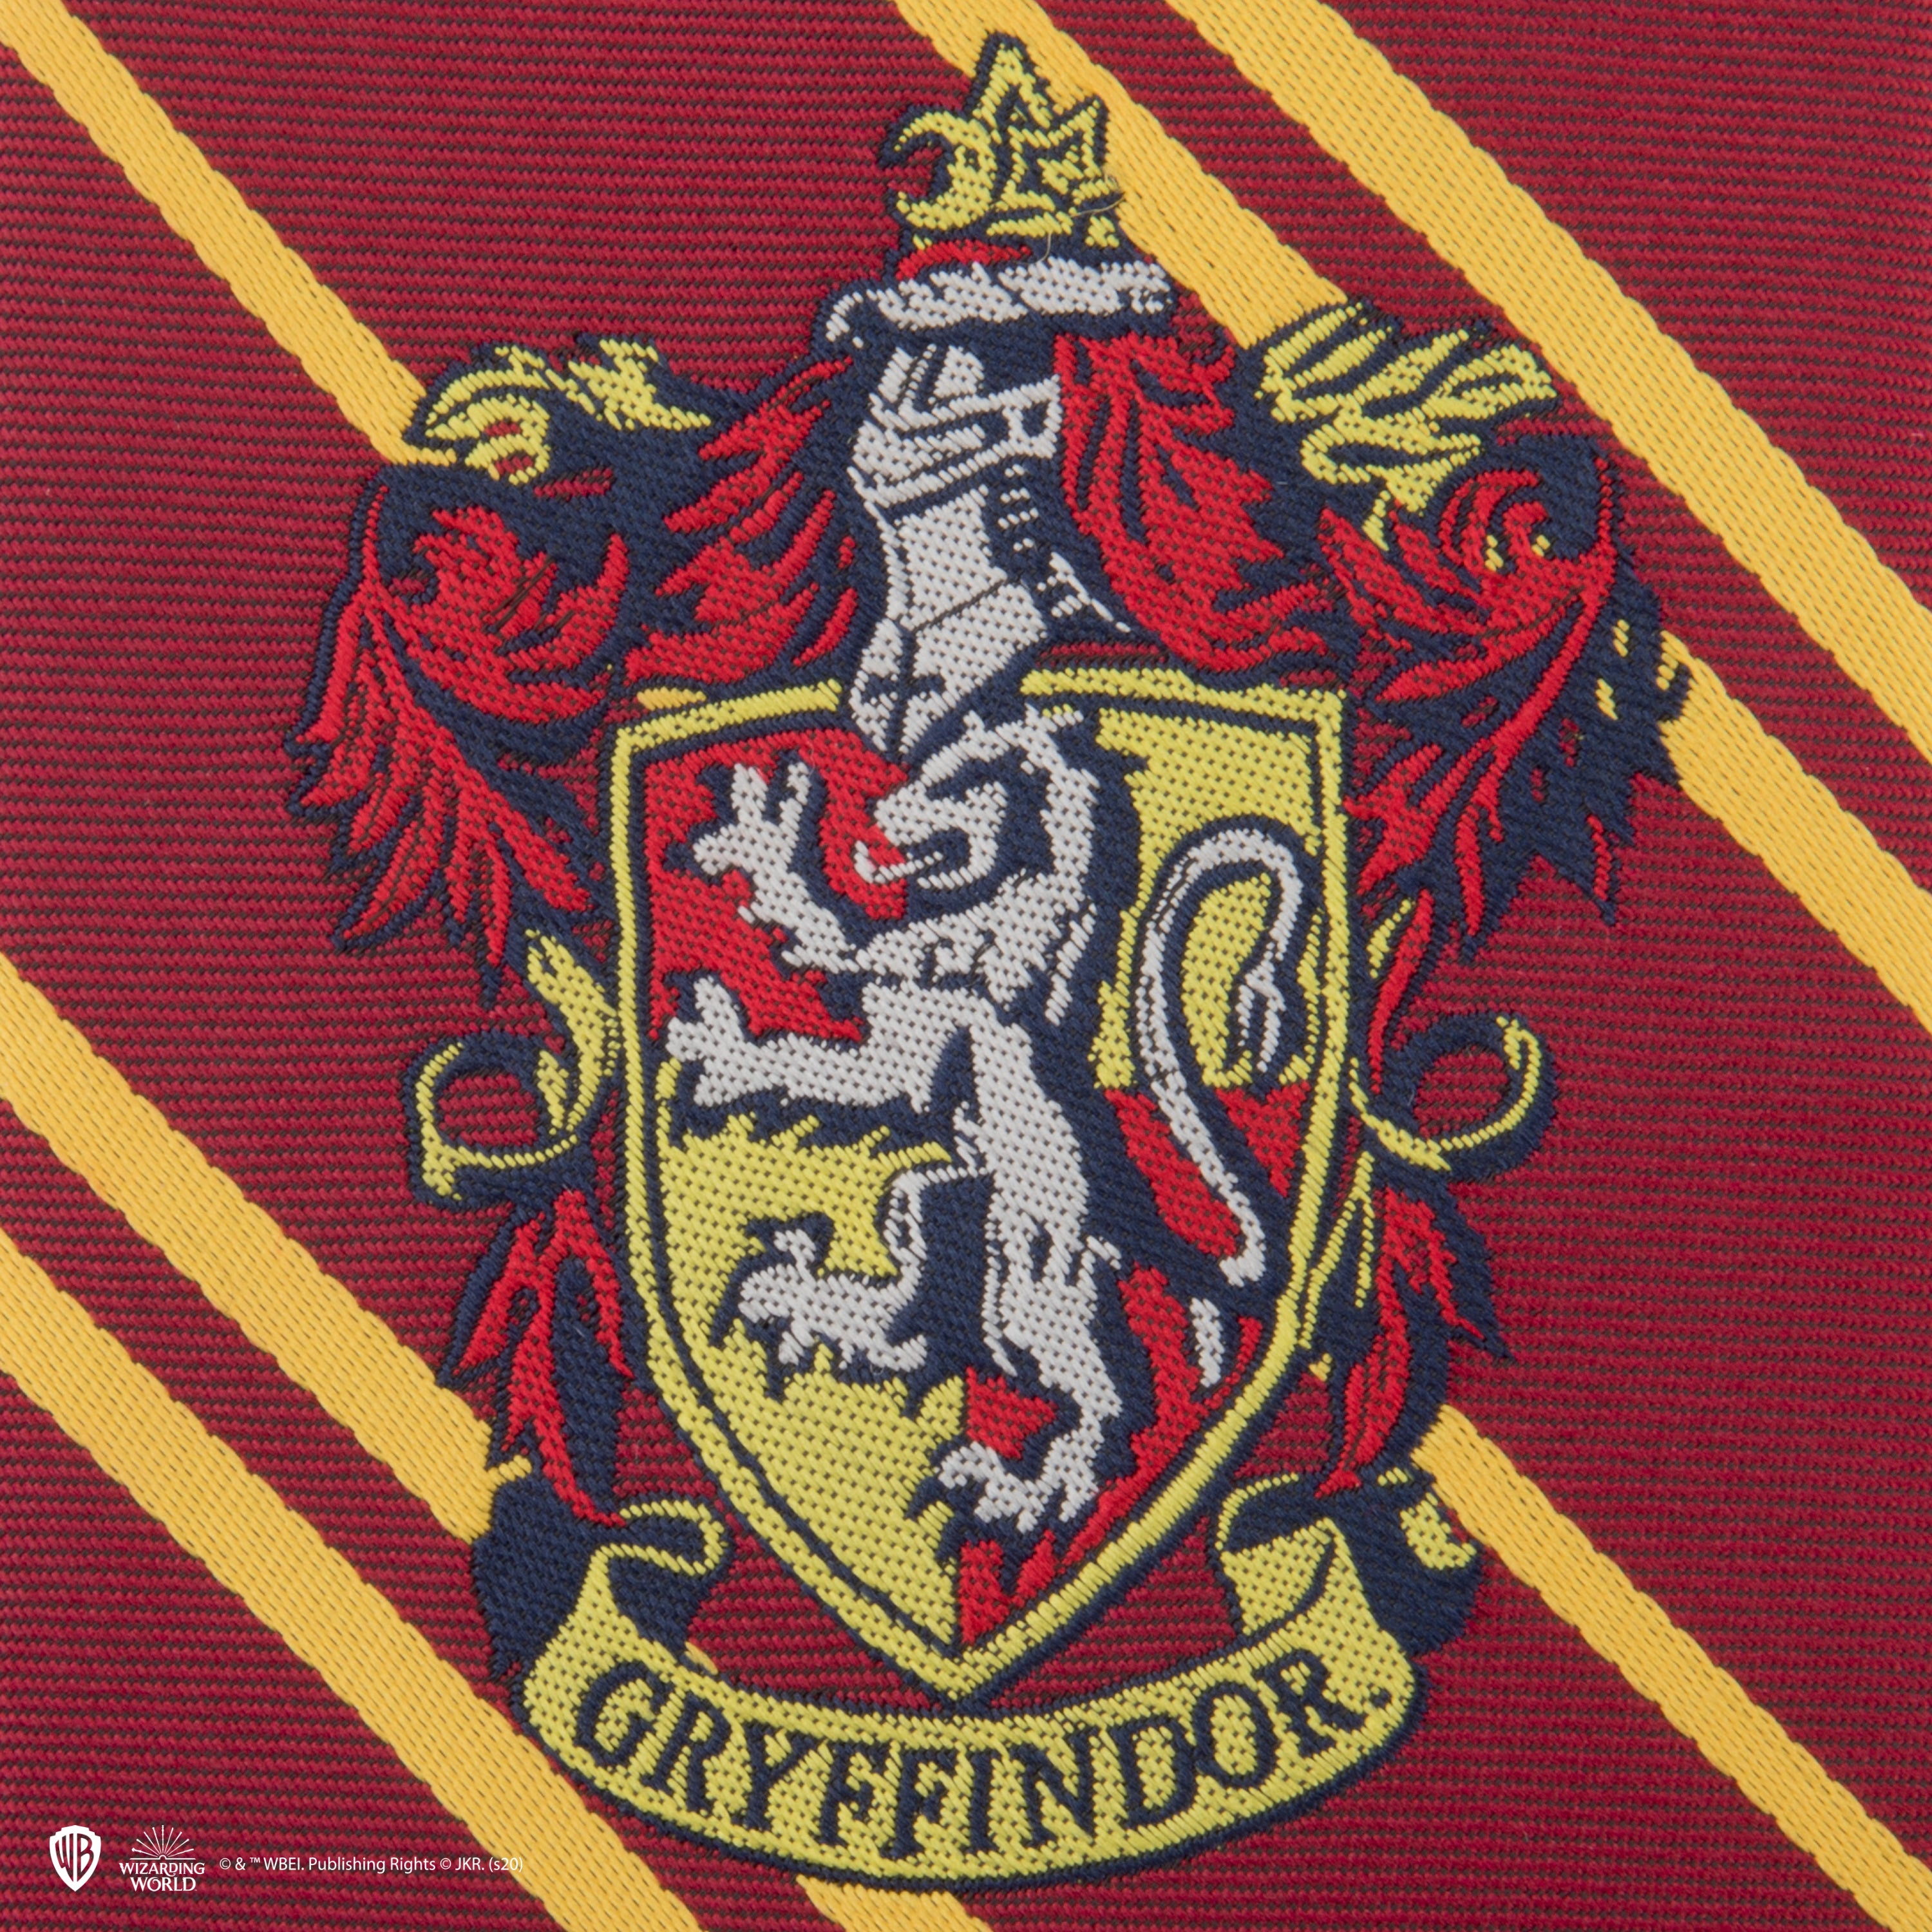 Cravate Enfants - Gryffondor - Boutique Harry Potter